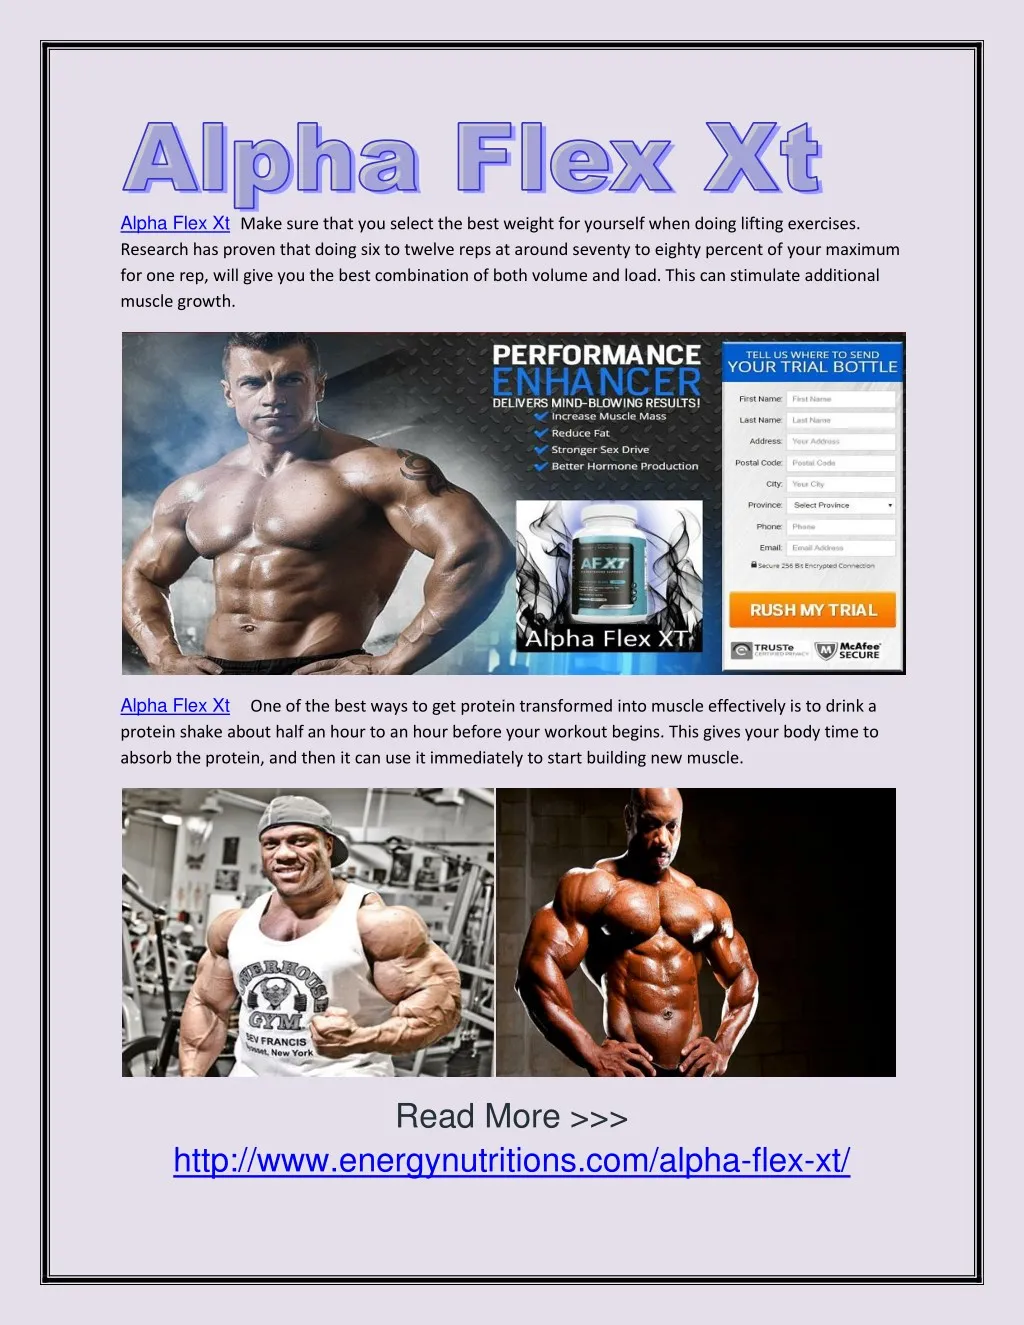 alpha flex xt make sure that you select the best